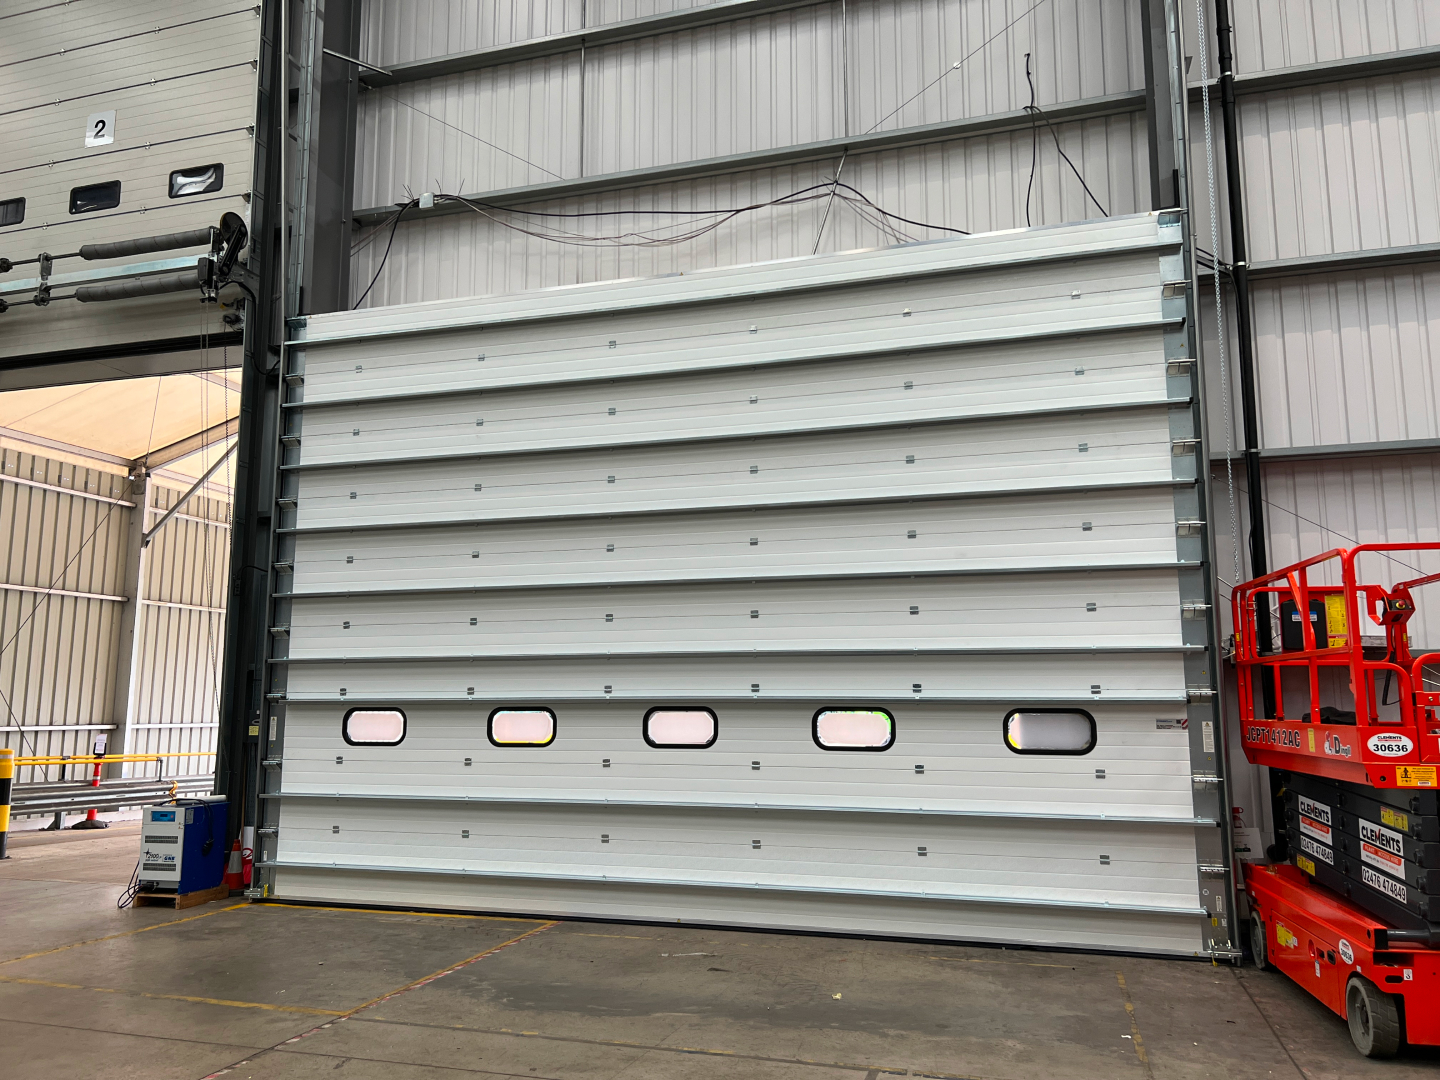 Case study: Installing an industrial door in Birmingham